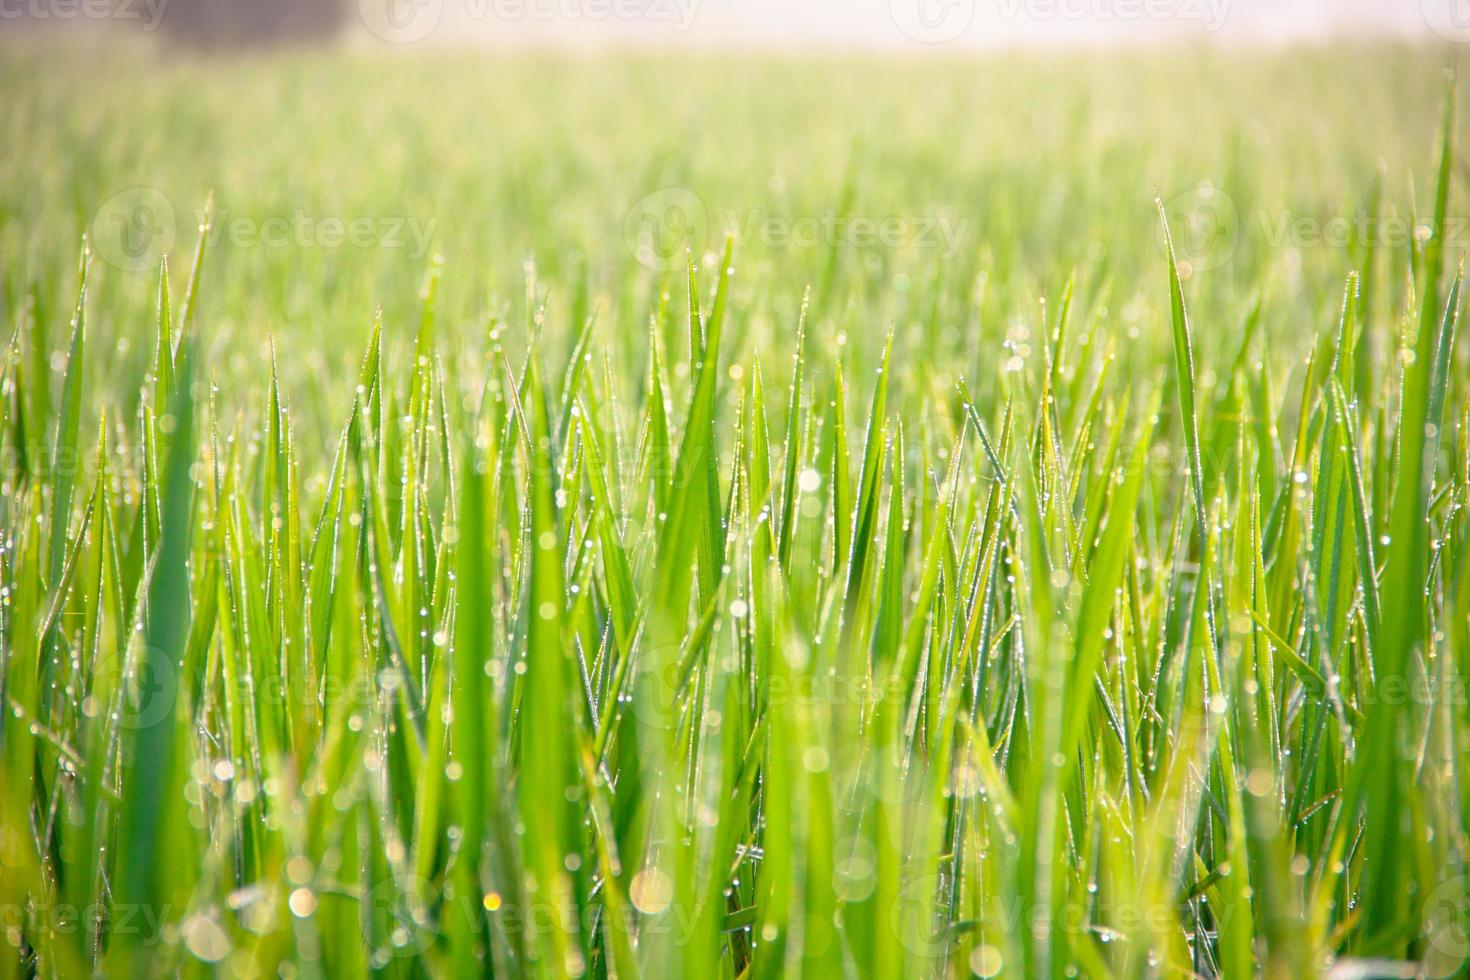 gouttes d'eau sur l'herbe verte - DOF peu profond photo